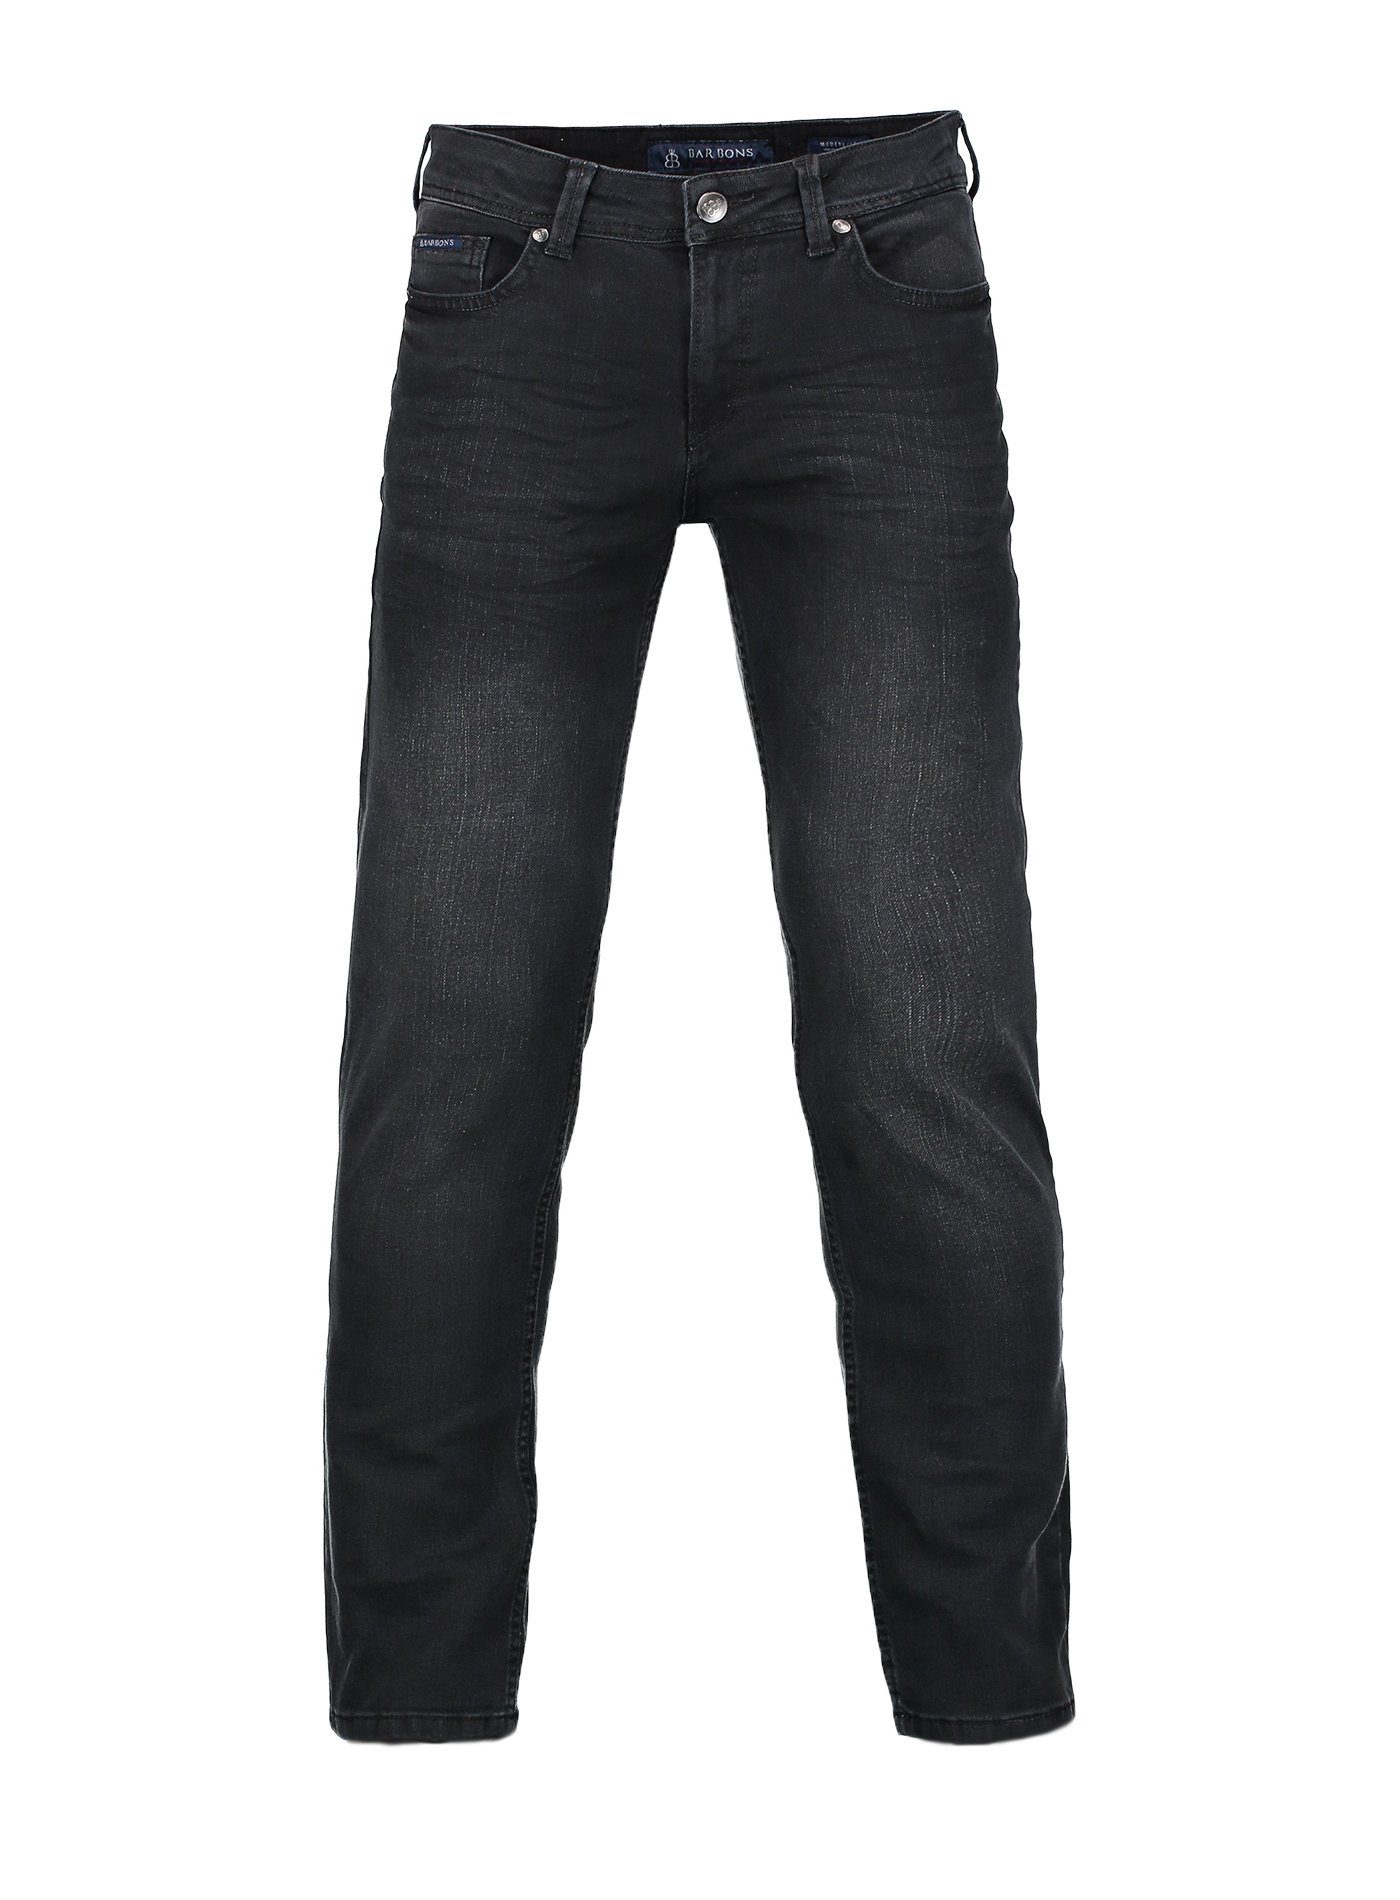 5-Pocket 5-Pocket-Jeans Regular Design Herren BARBONS 03-Schwarz Fit